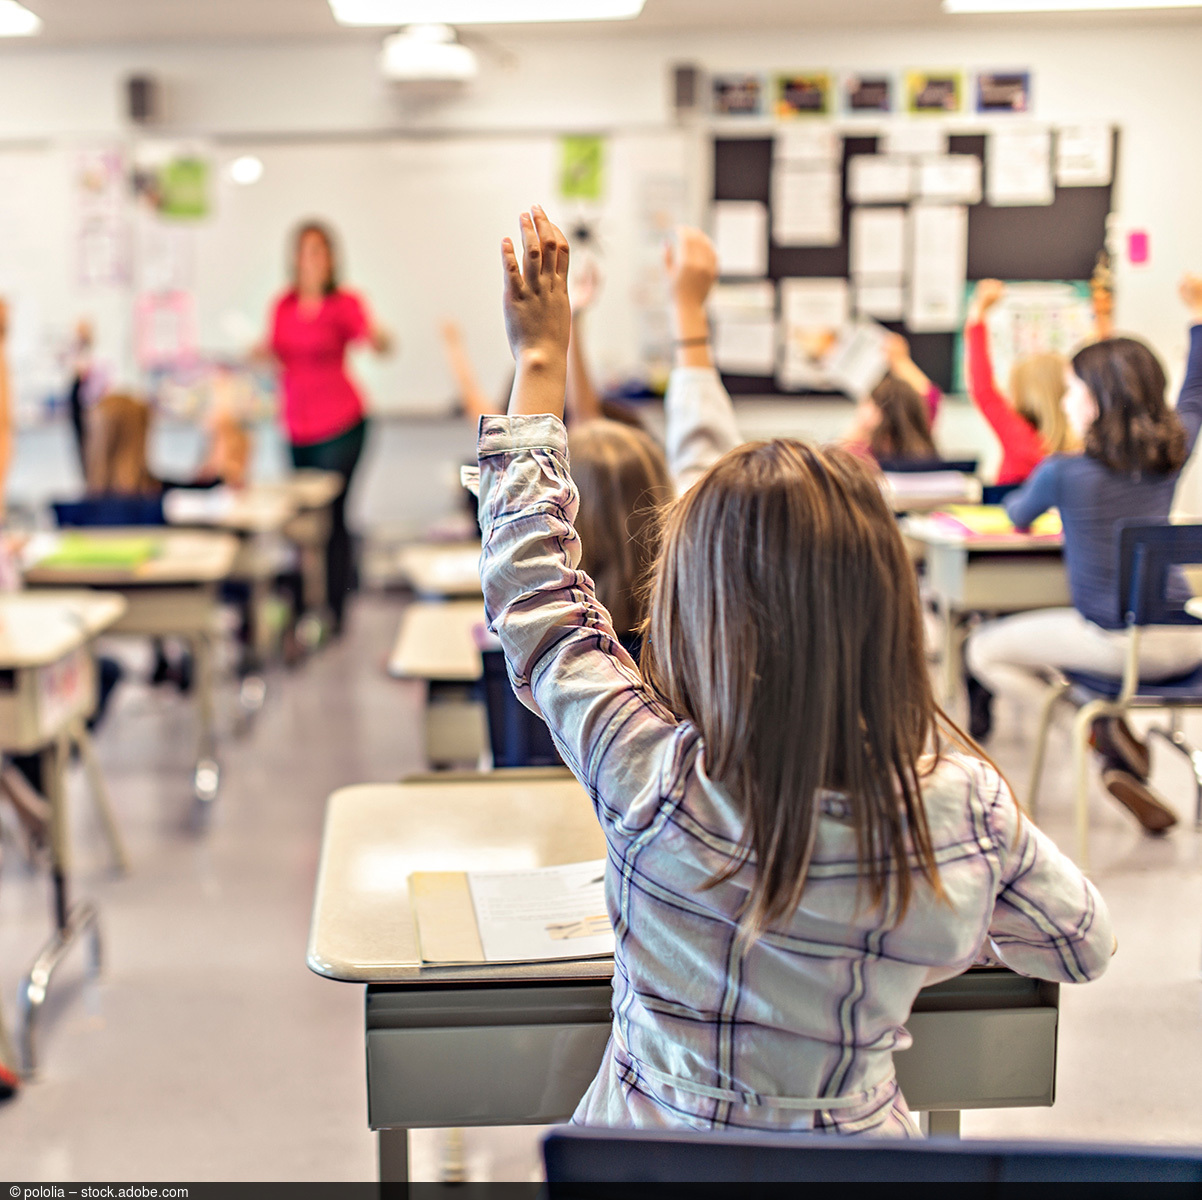 Kinder werden in einem Klassenzimmer unterrichtet und heben ihre Hand.